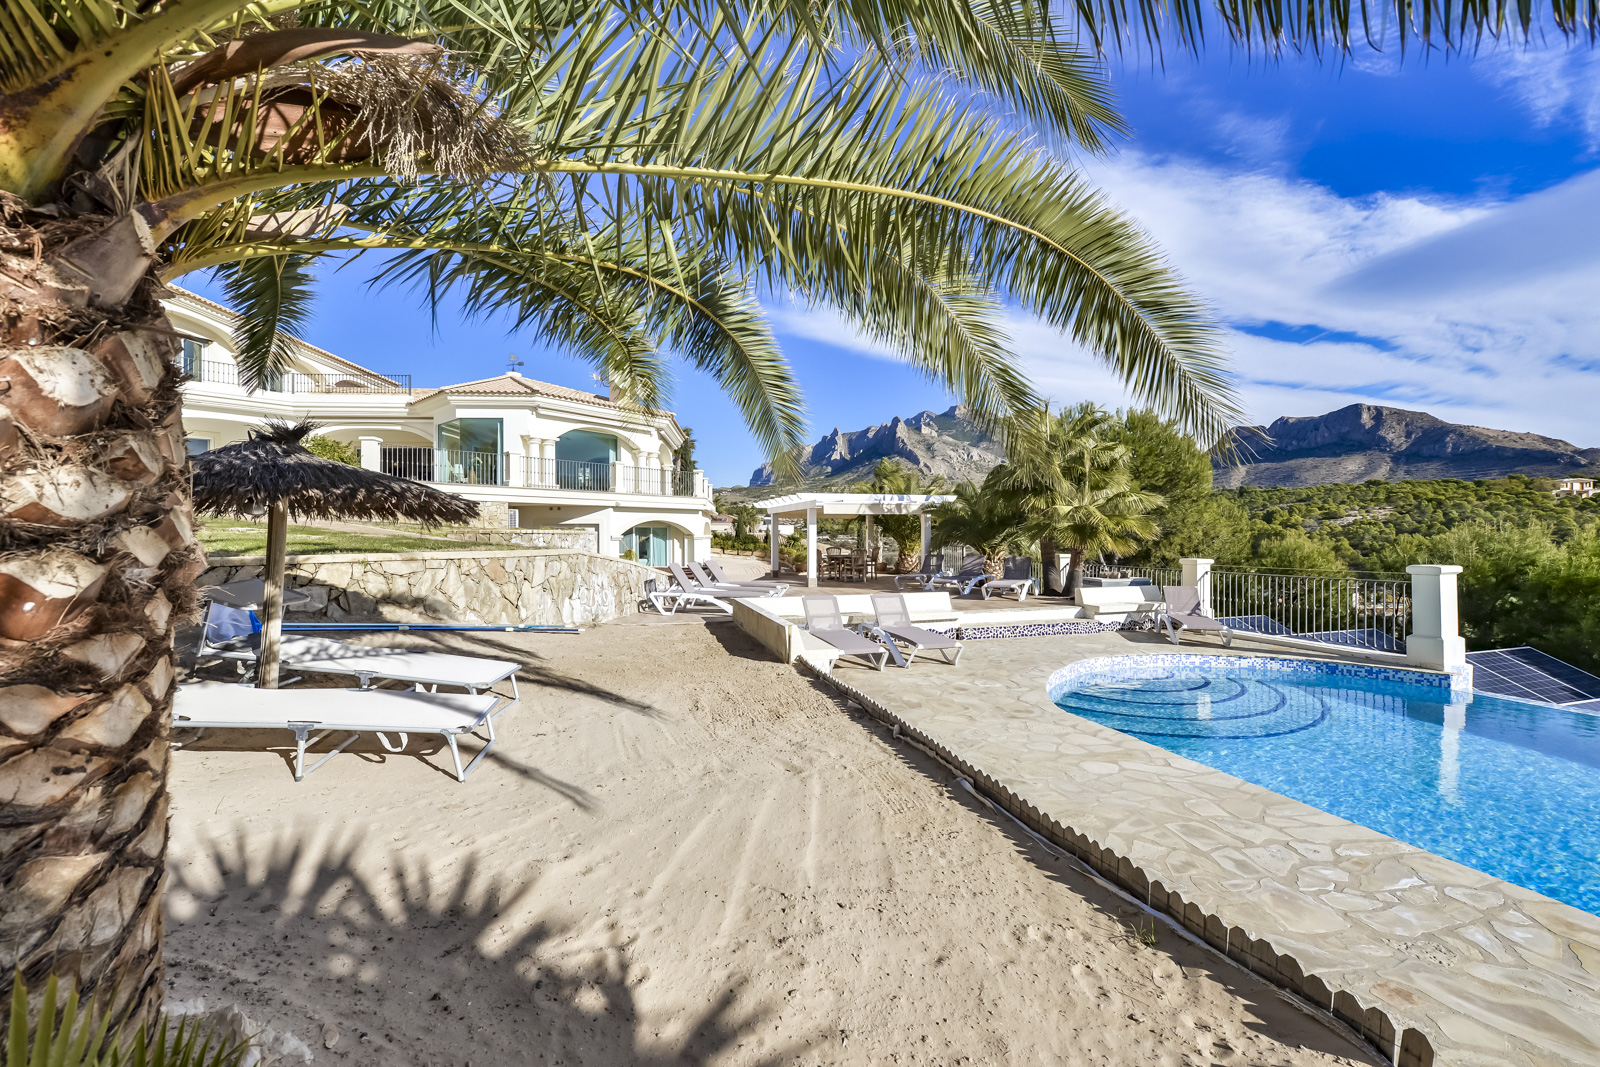 Villa única en venta en Busot, a 10 km de las playas de El Campello, Alicante